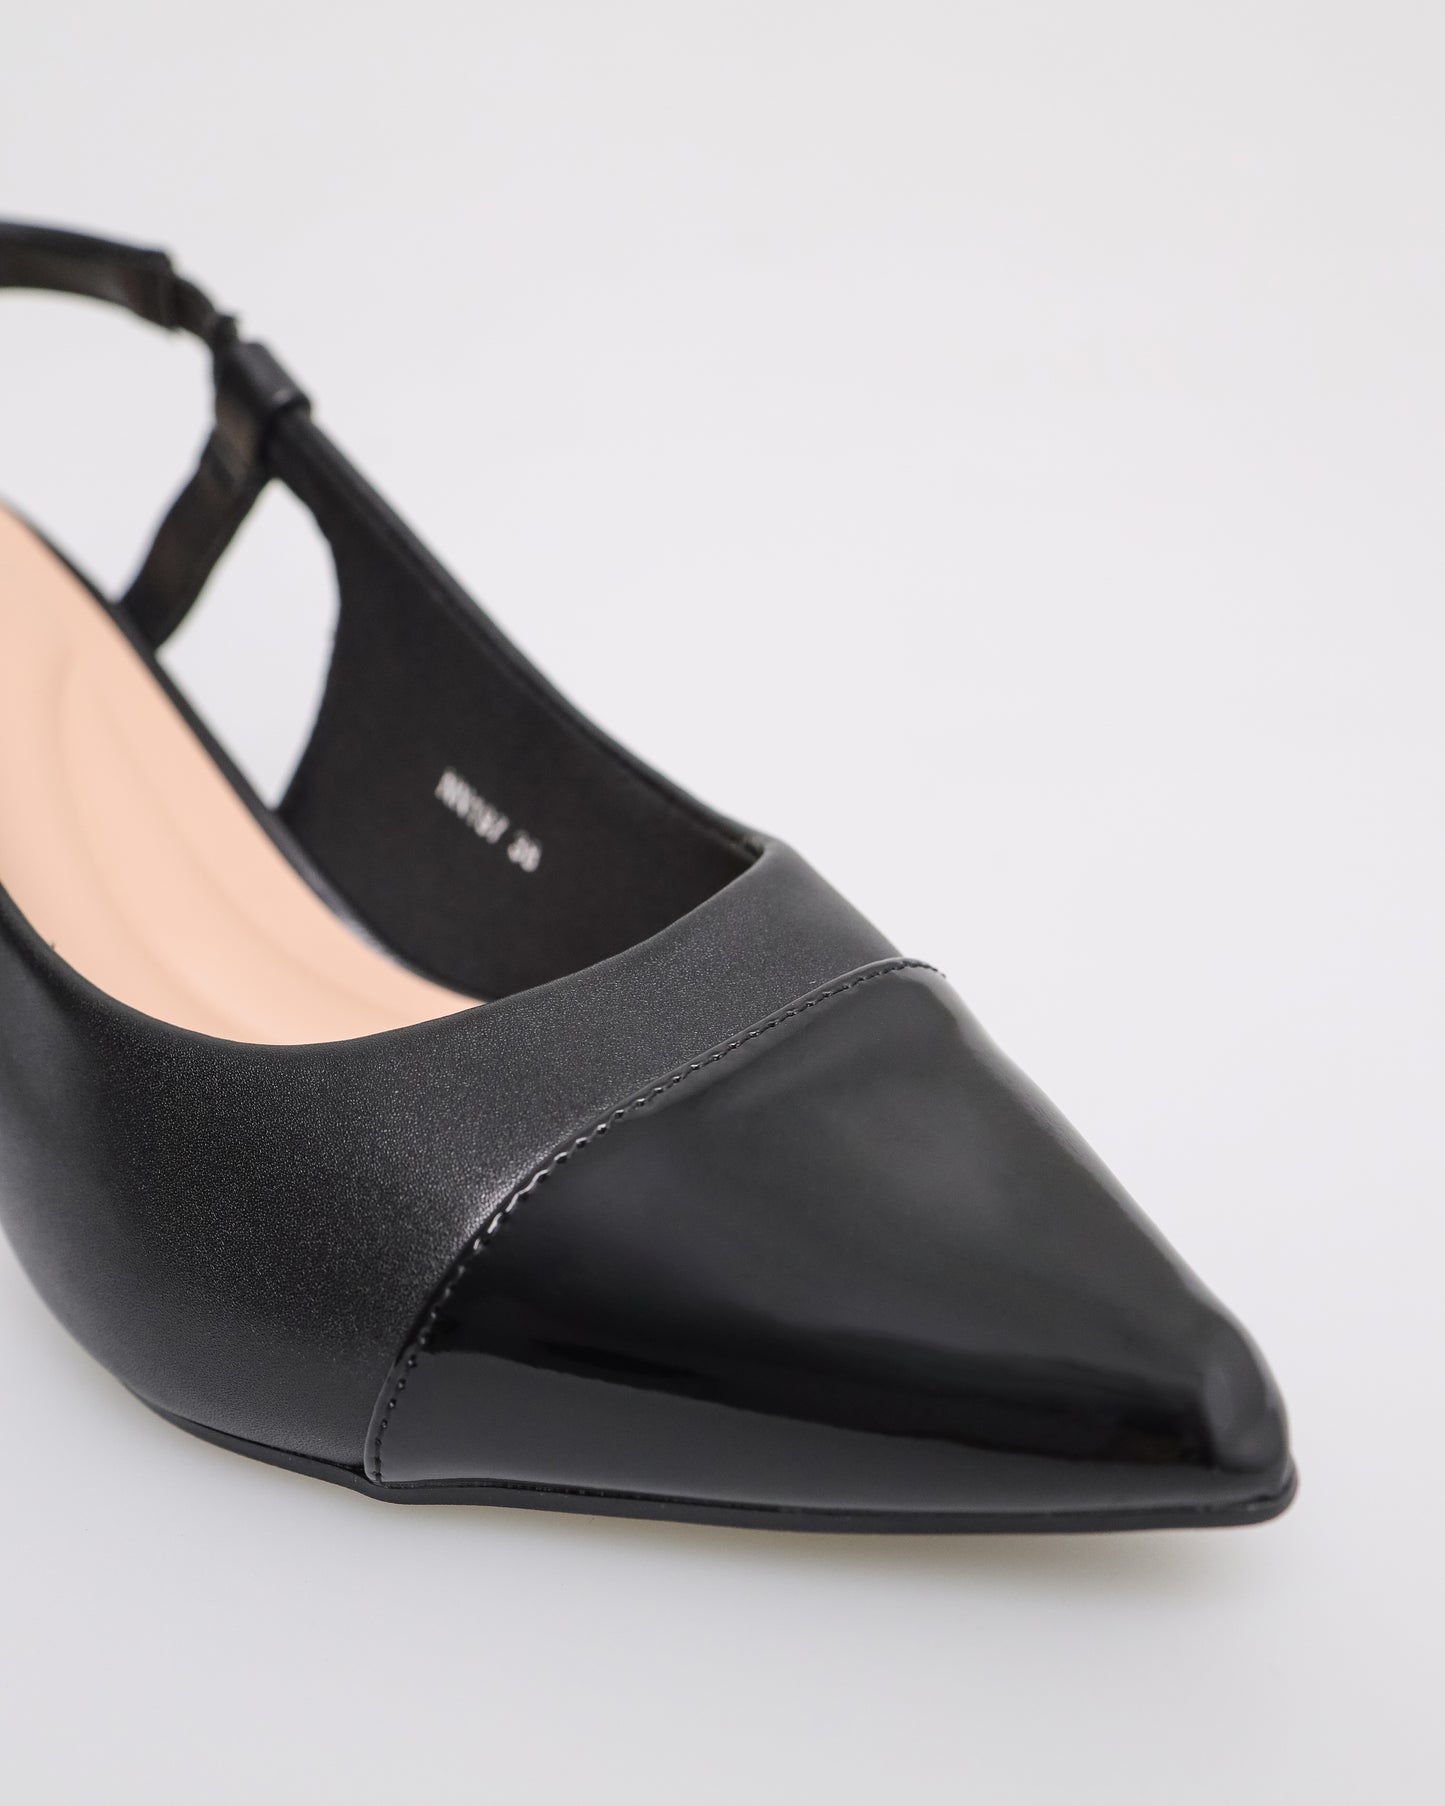 Tomaz NN197 Ladies Cap Toe Slingback Heels (Black)